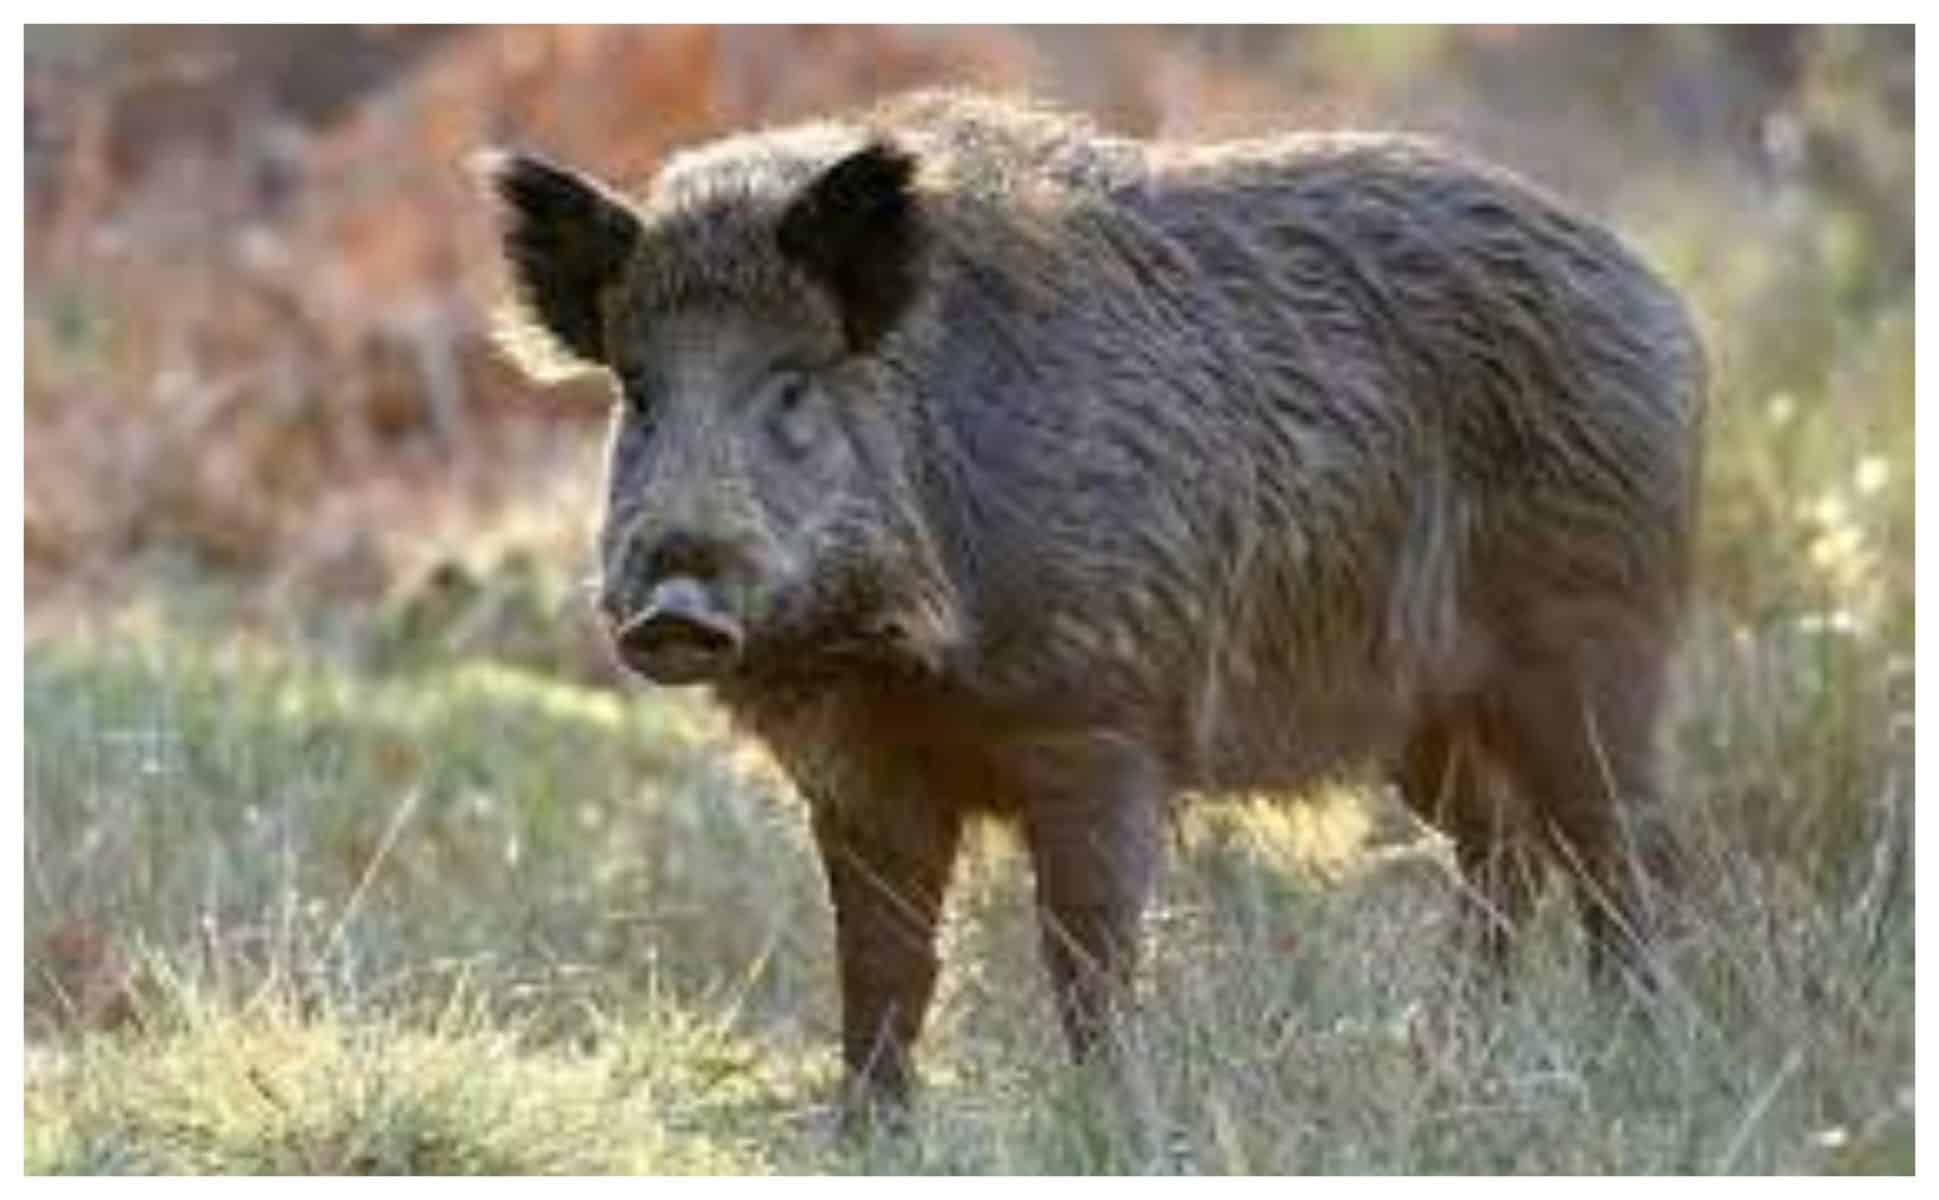 mistreţ vânat în zona porumbacu confirmat cu pestă porcină